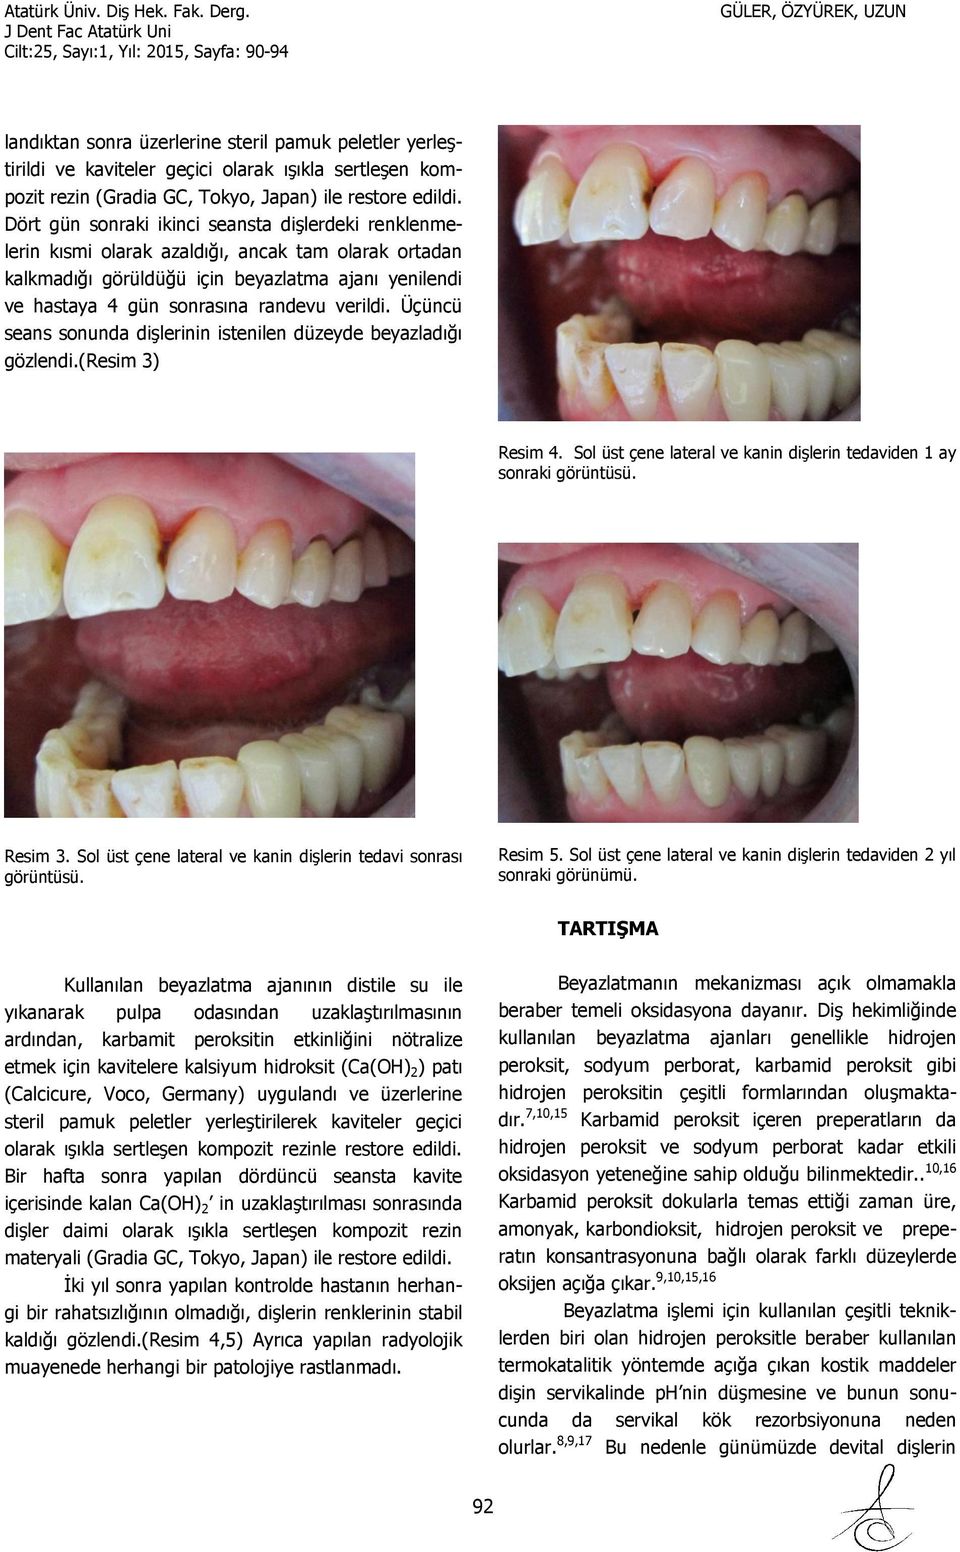 verildi. Üçüncü seans sonunda dişlerinin istenilen düzeyde beyazladığı gözlendi.(resim 3) Resim 4. Sol üst çene lateral ve kanin dişlerin tedaviden 1 ay sonraki görüntüsü. Resim 3.